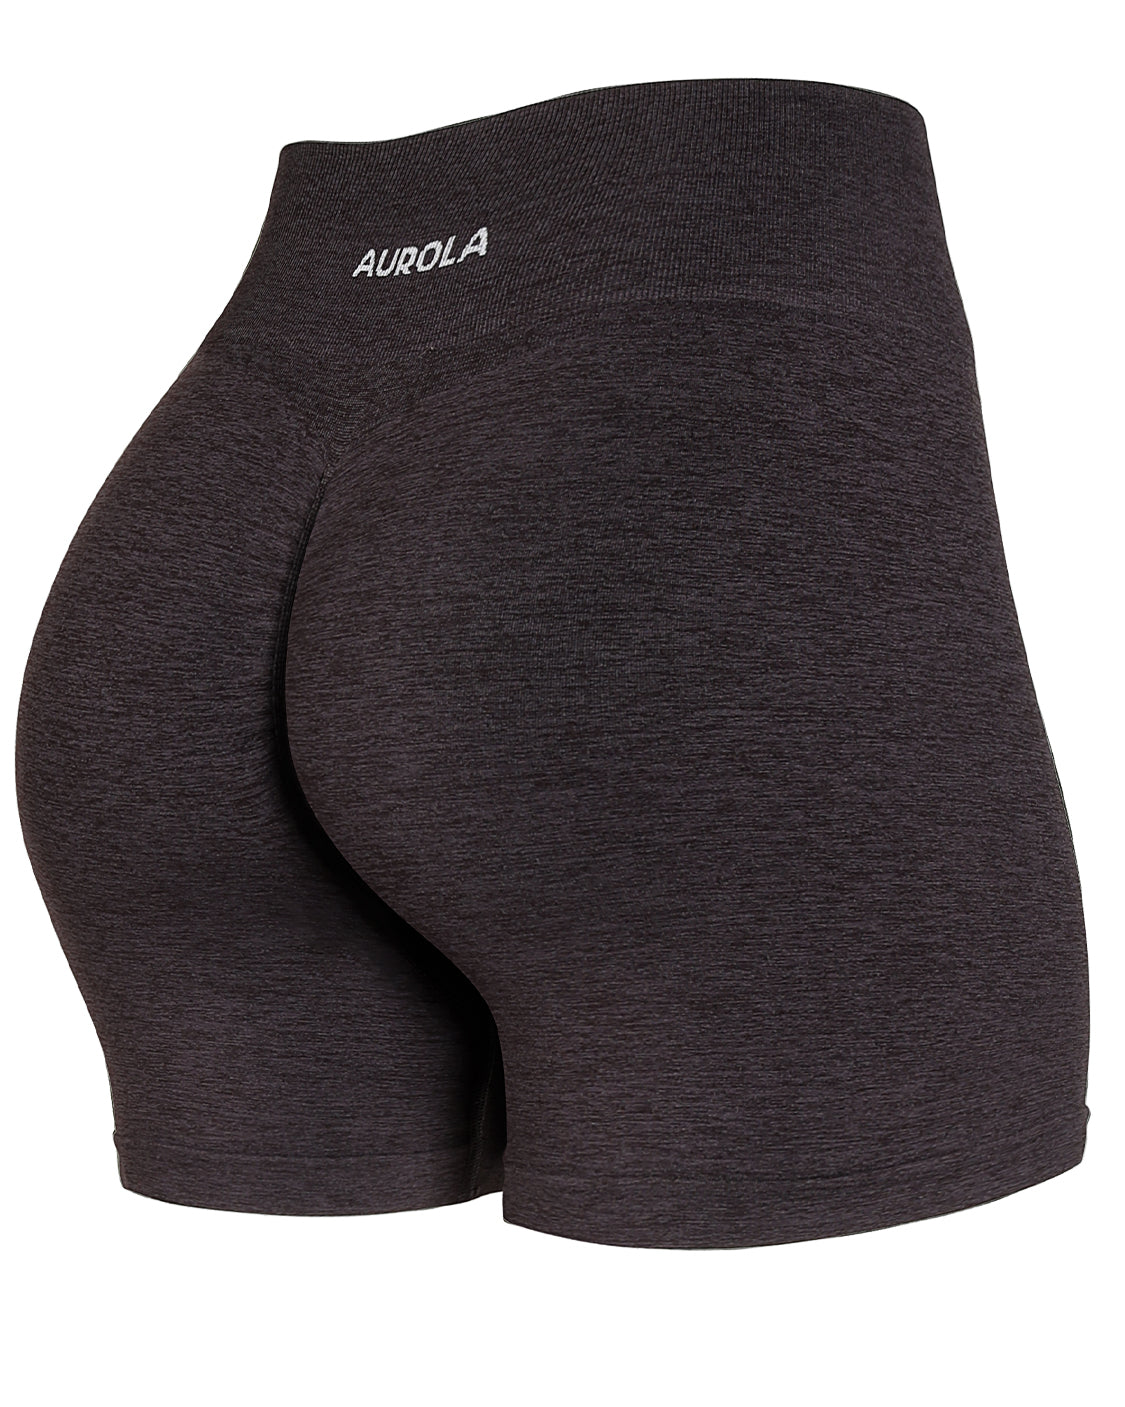 aurola shorts sarahh_89 - Gem